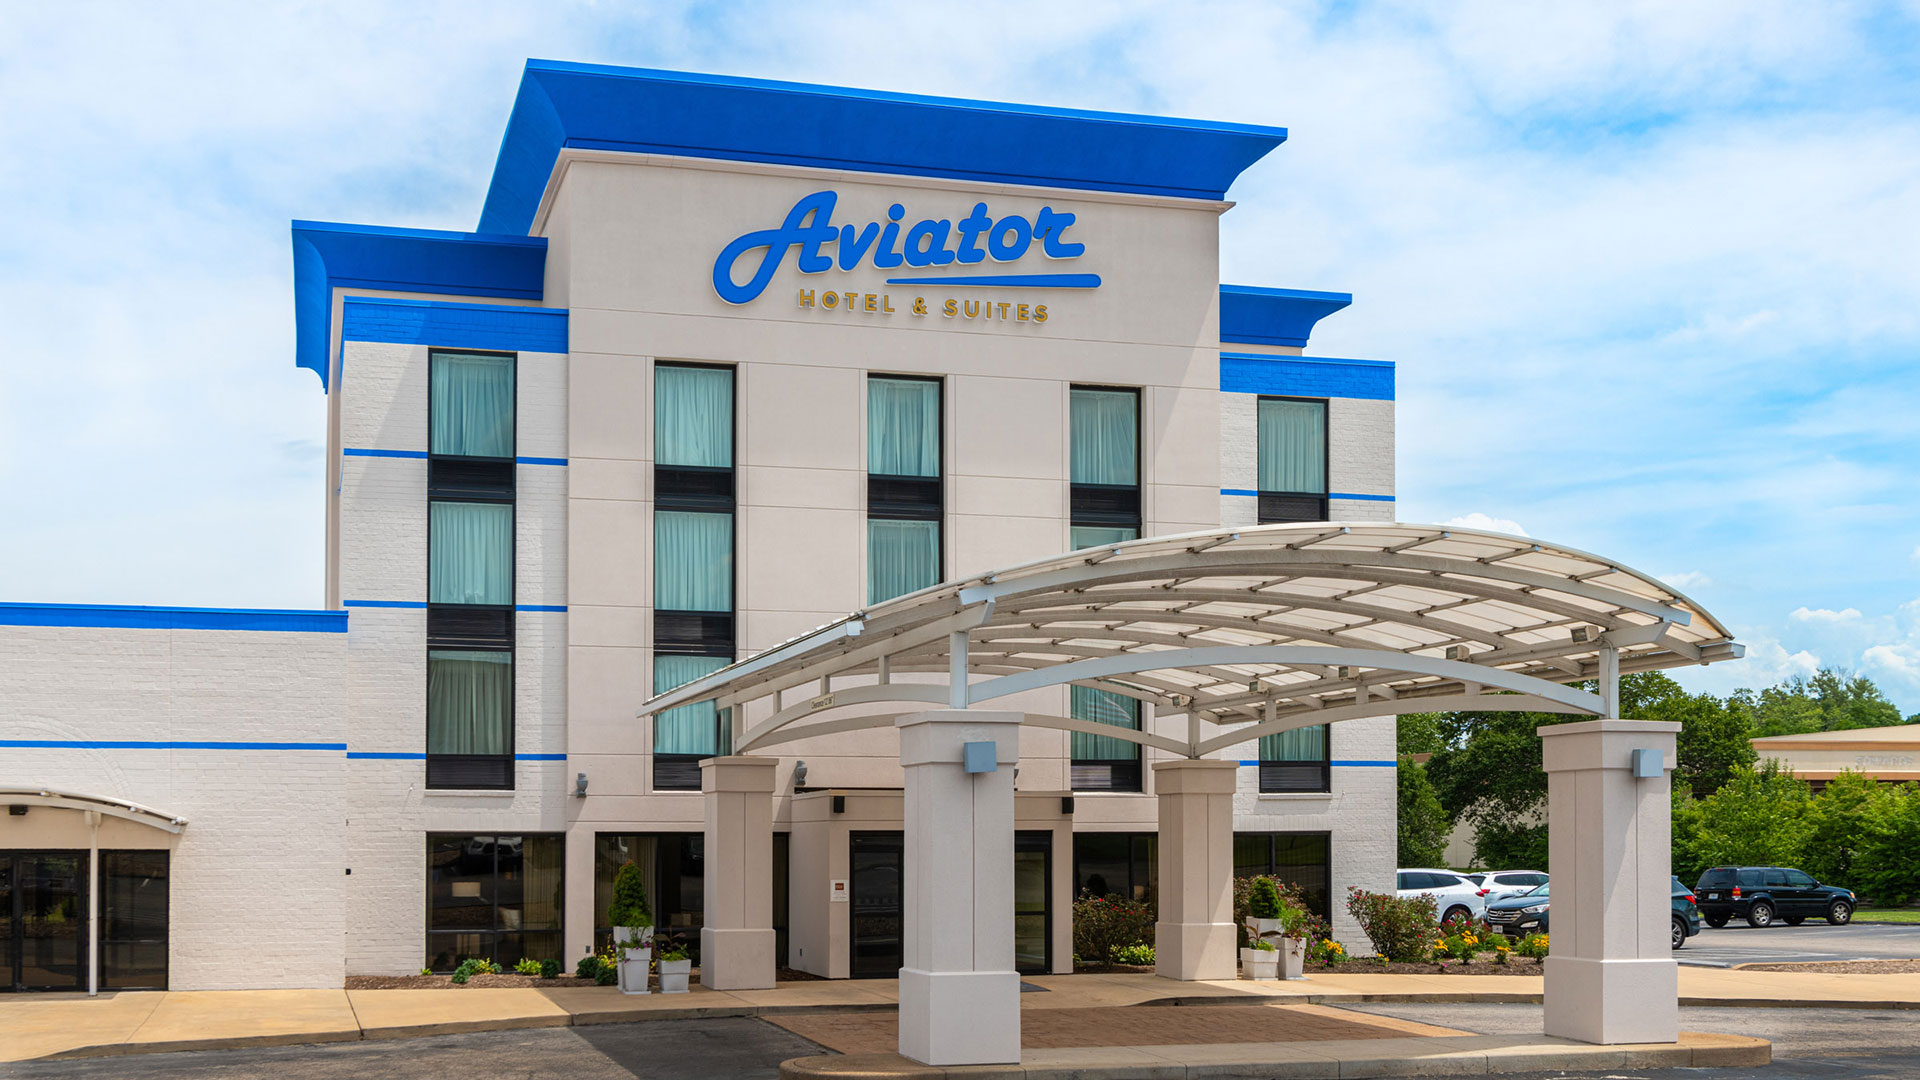 Aviator Hotel & Suites